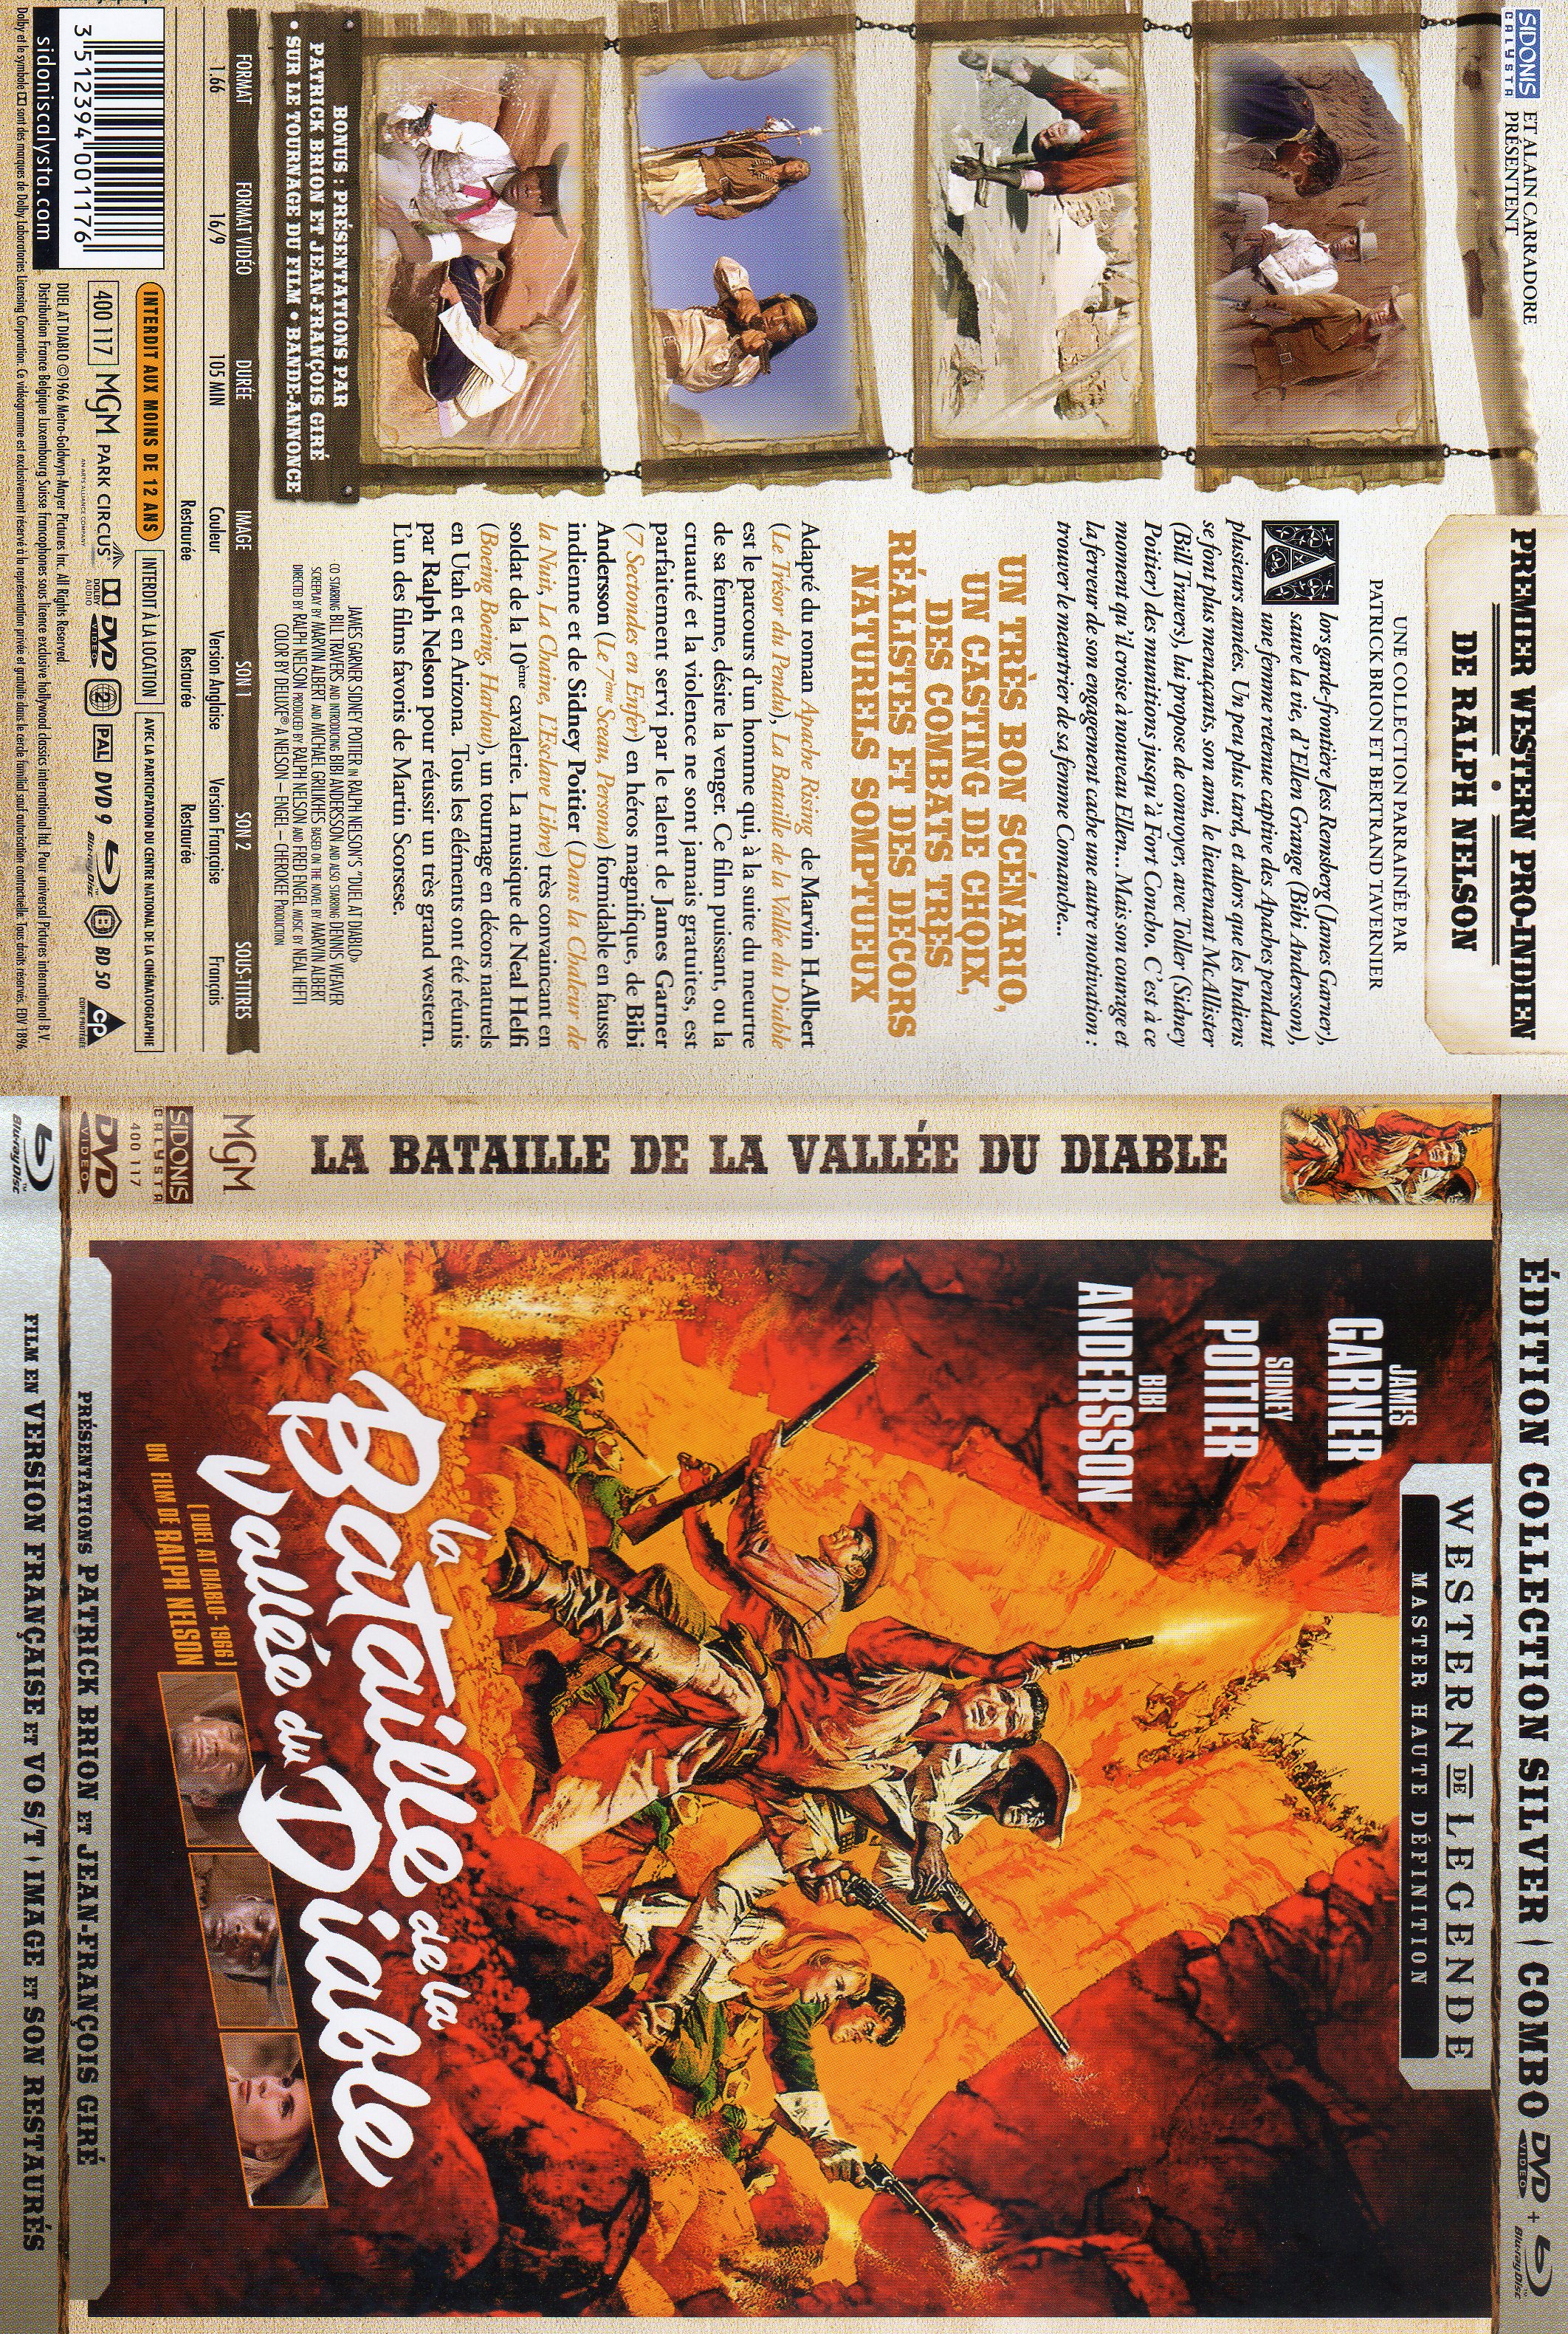 Jaquette DVD La bataille de la valle du diable (BLU-RAY)